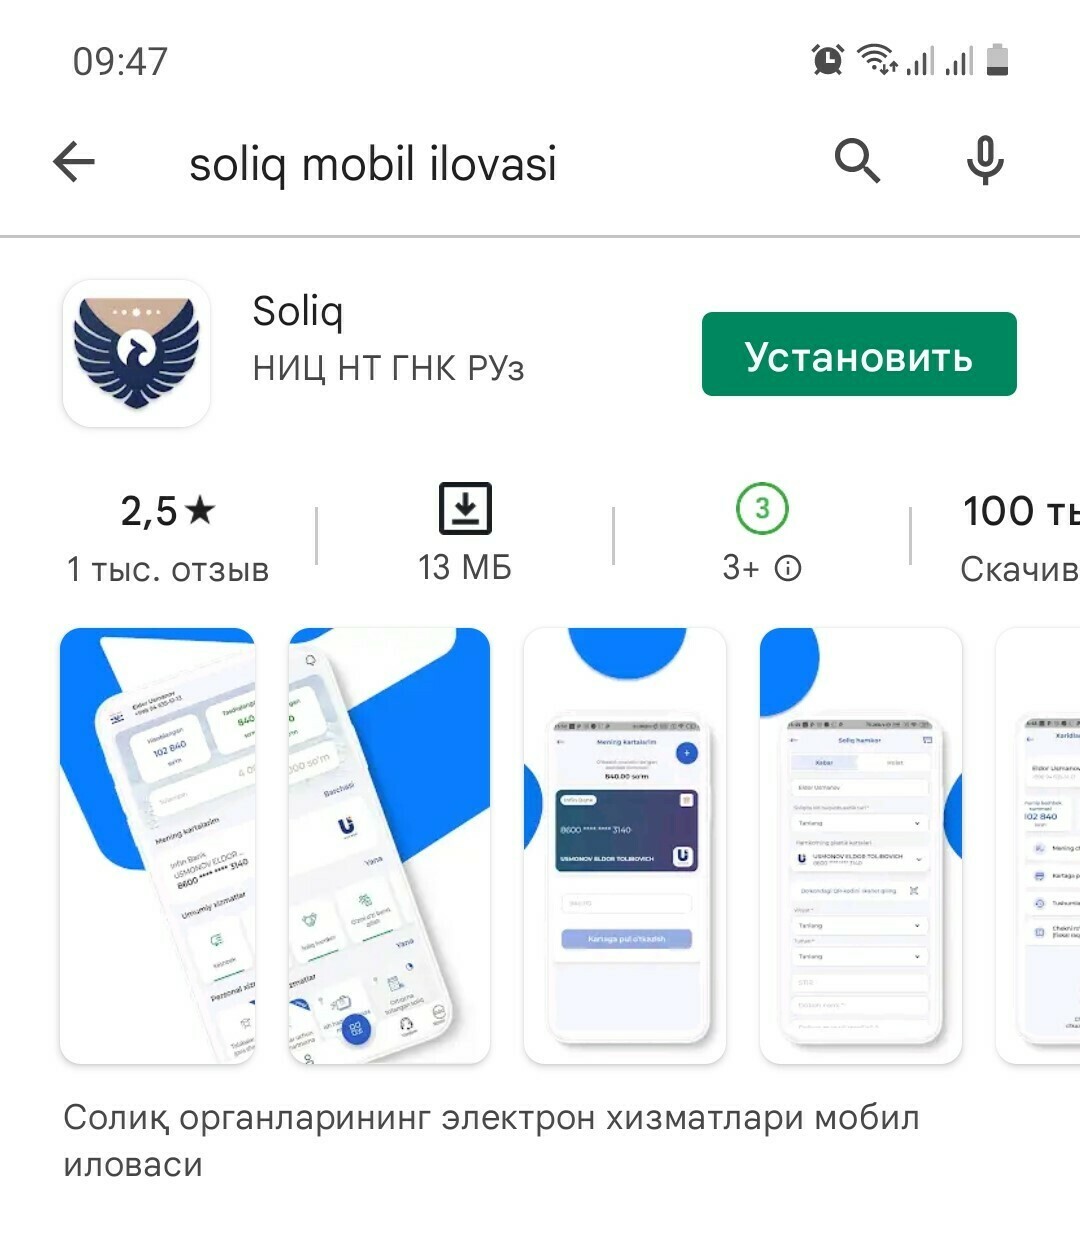 Мобильное приложение soliq. Soliq мобил. Soliq mobil ilovasi. Приложение soliq логотип. New soliq uz